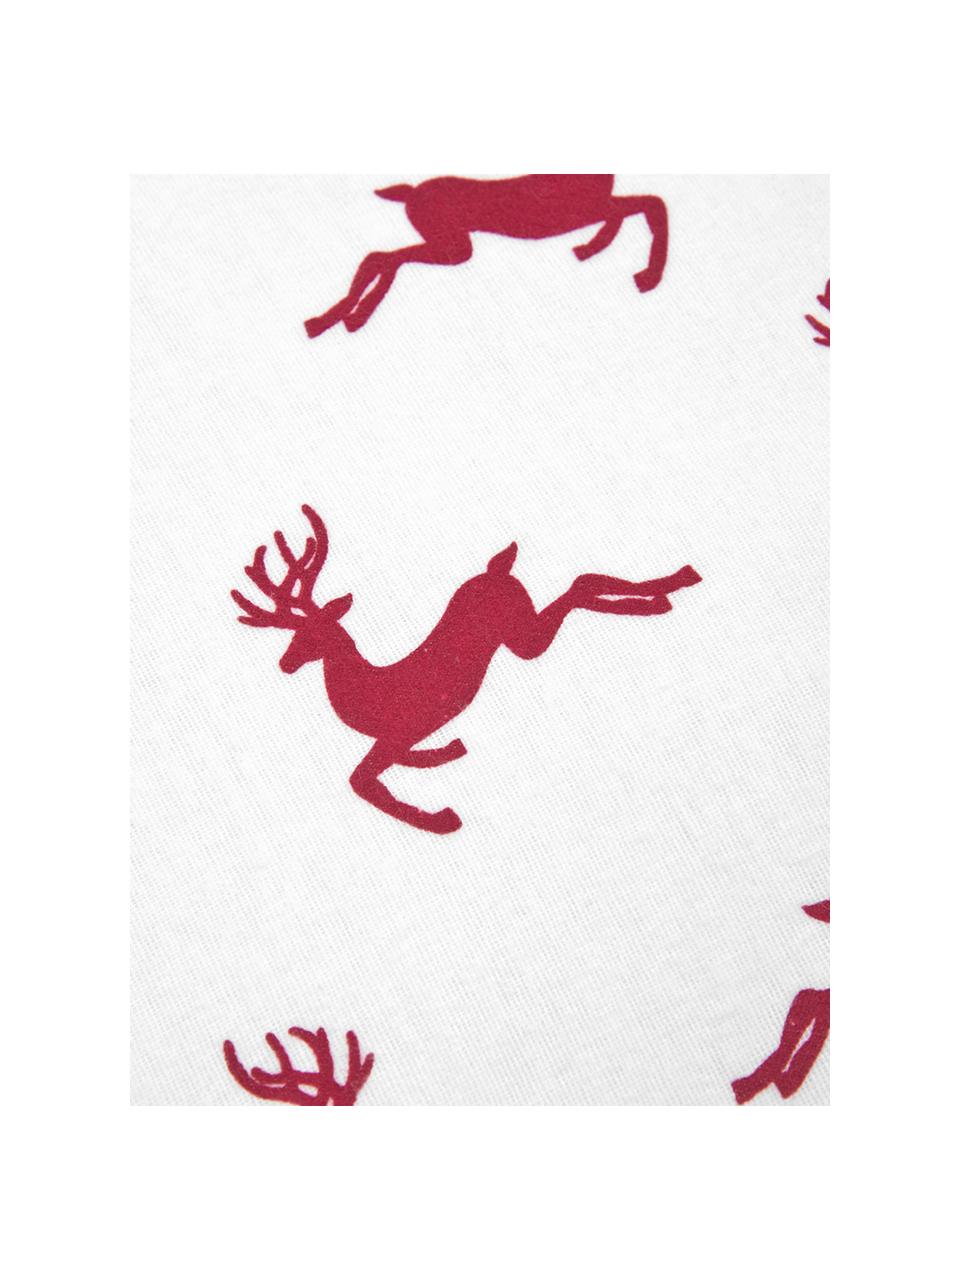 Flanell-Bettwäsche Rudolph mit Rentieren, Webart: Flanell Flanell ist ein k, Rot, Ecru, 135 x 200 cm + 1 Kissen 80 x 80 cm